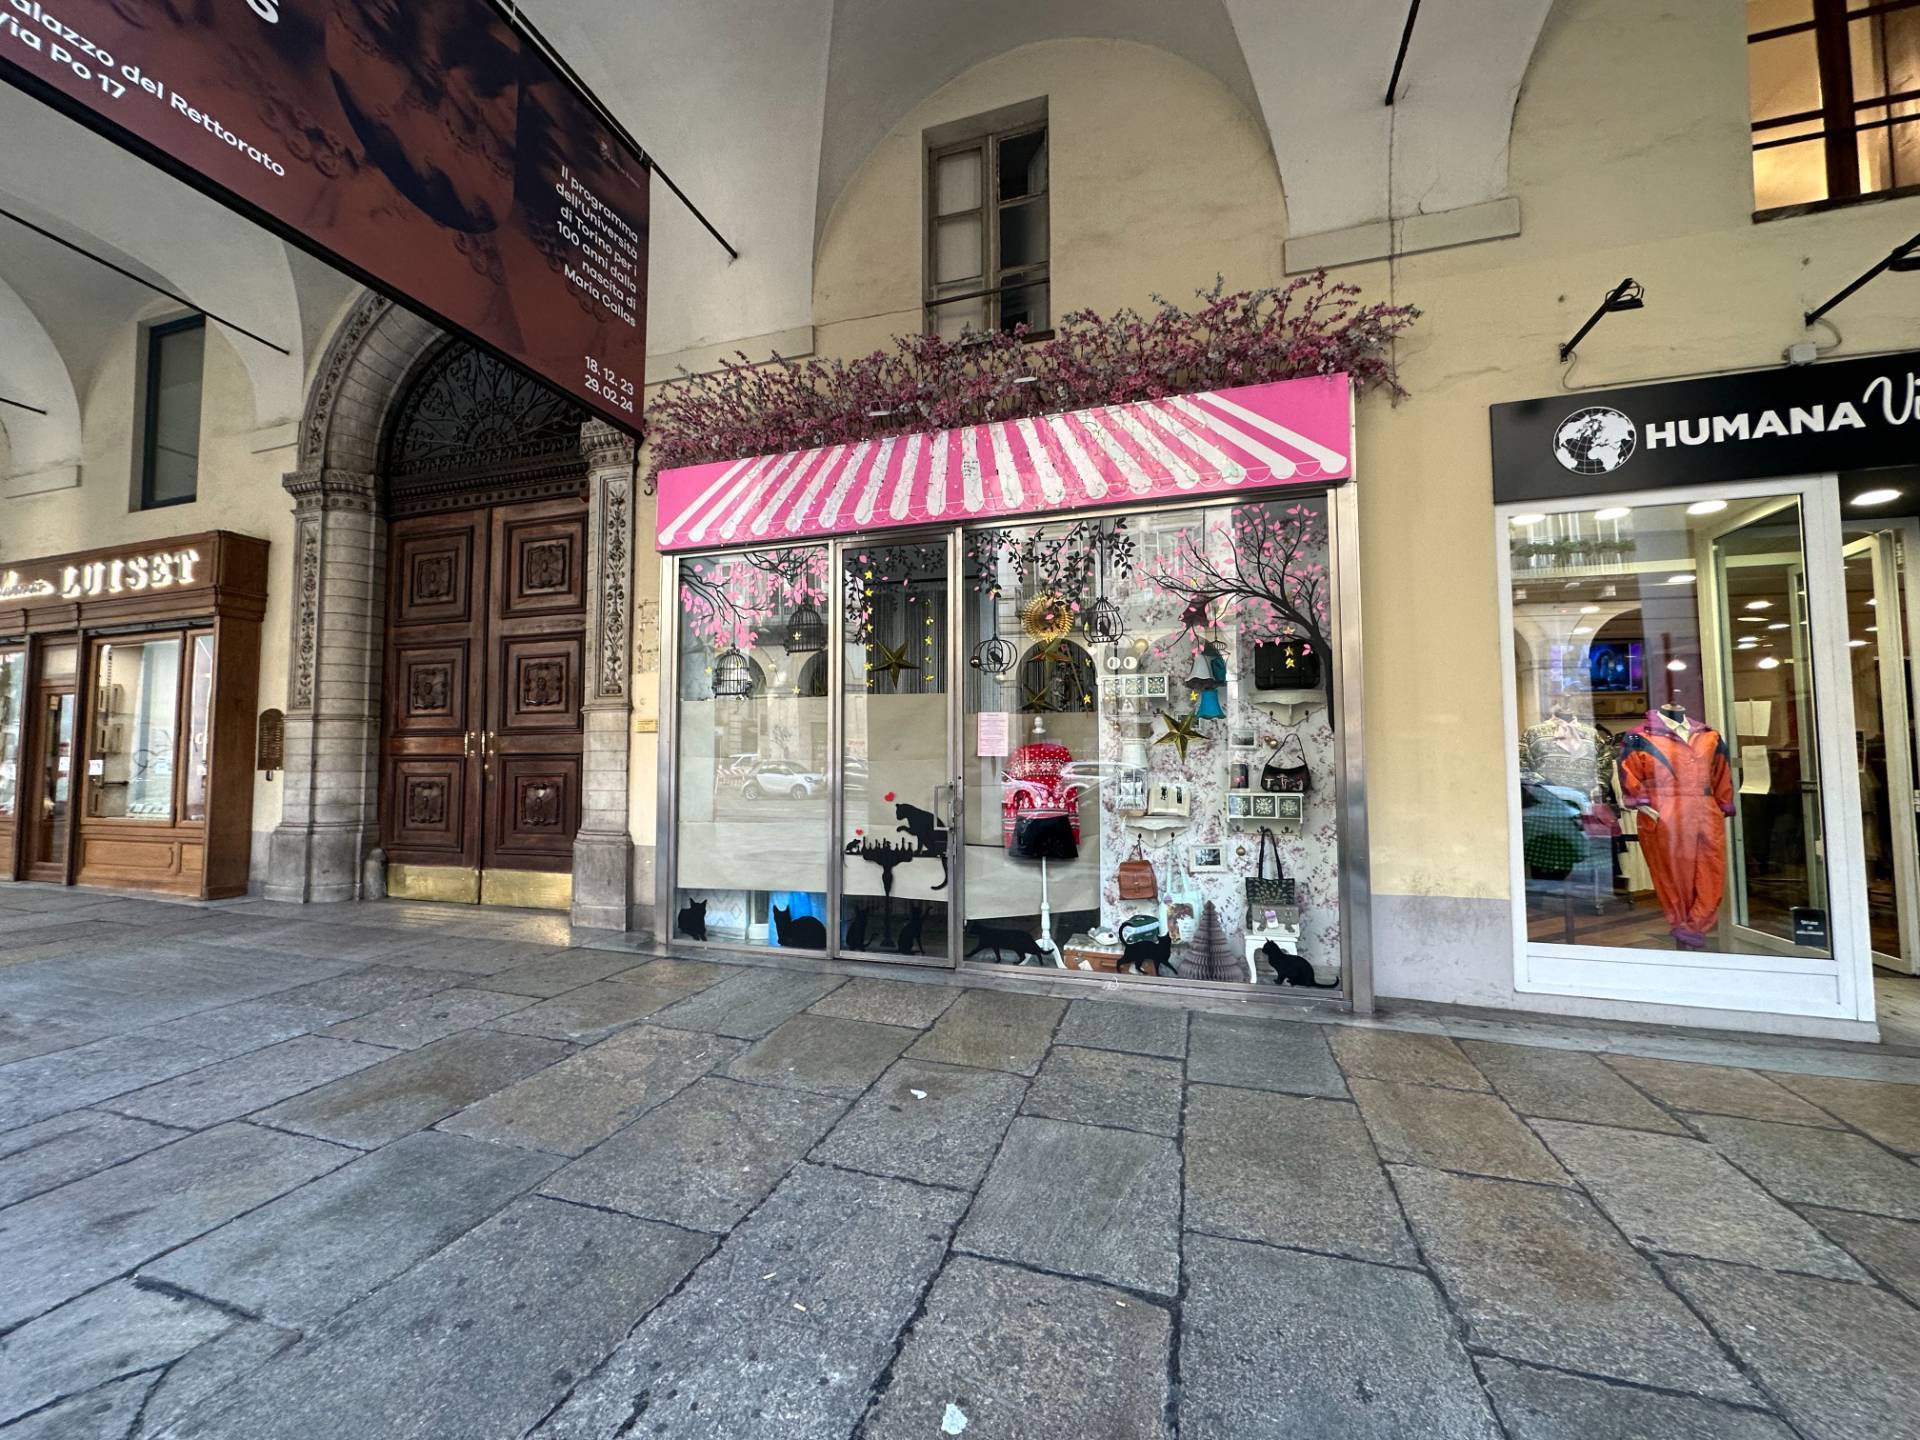 Locale commerciale in vendita, Torino centro